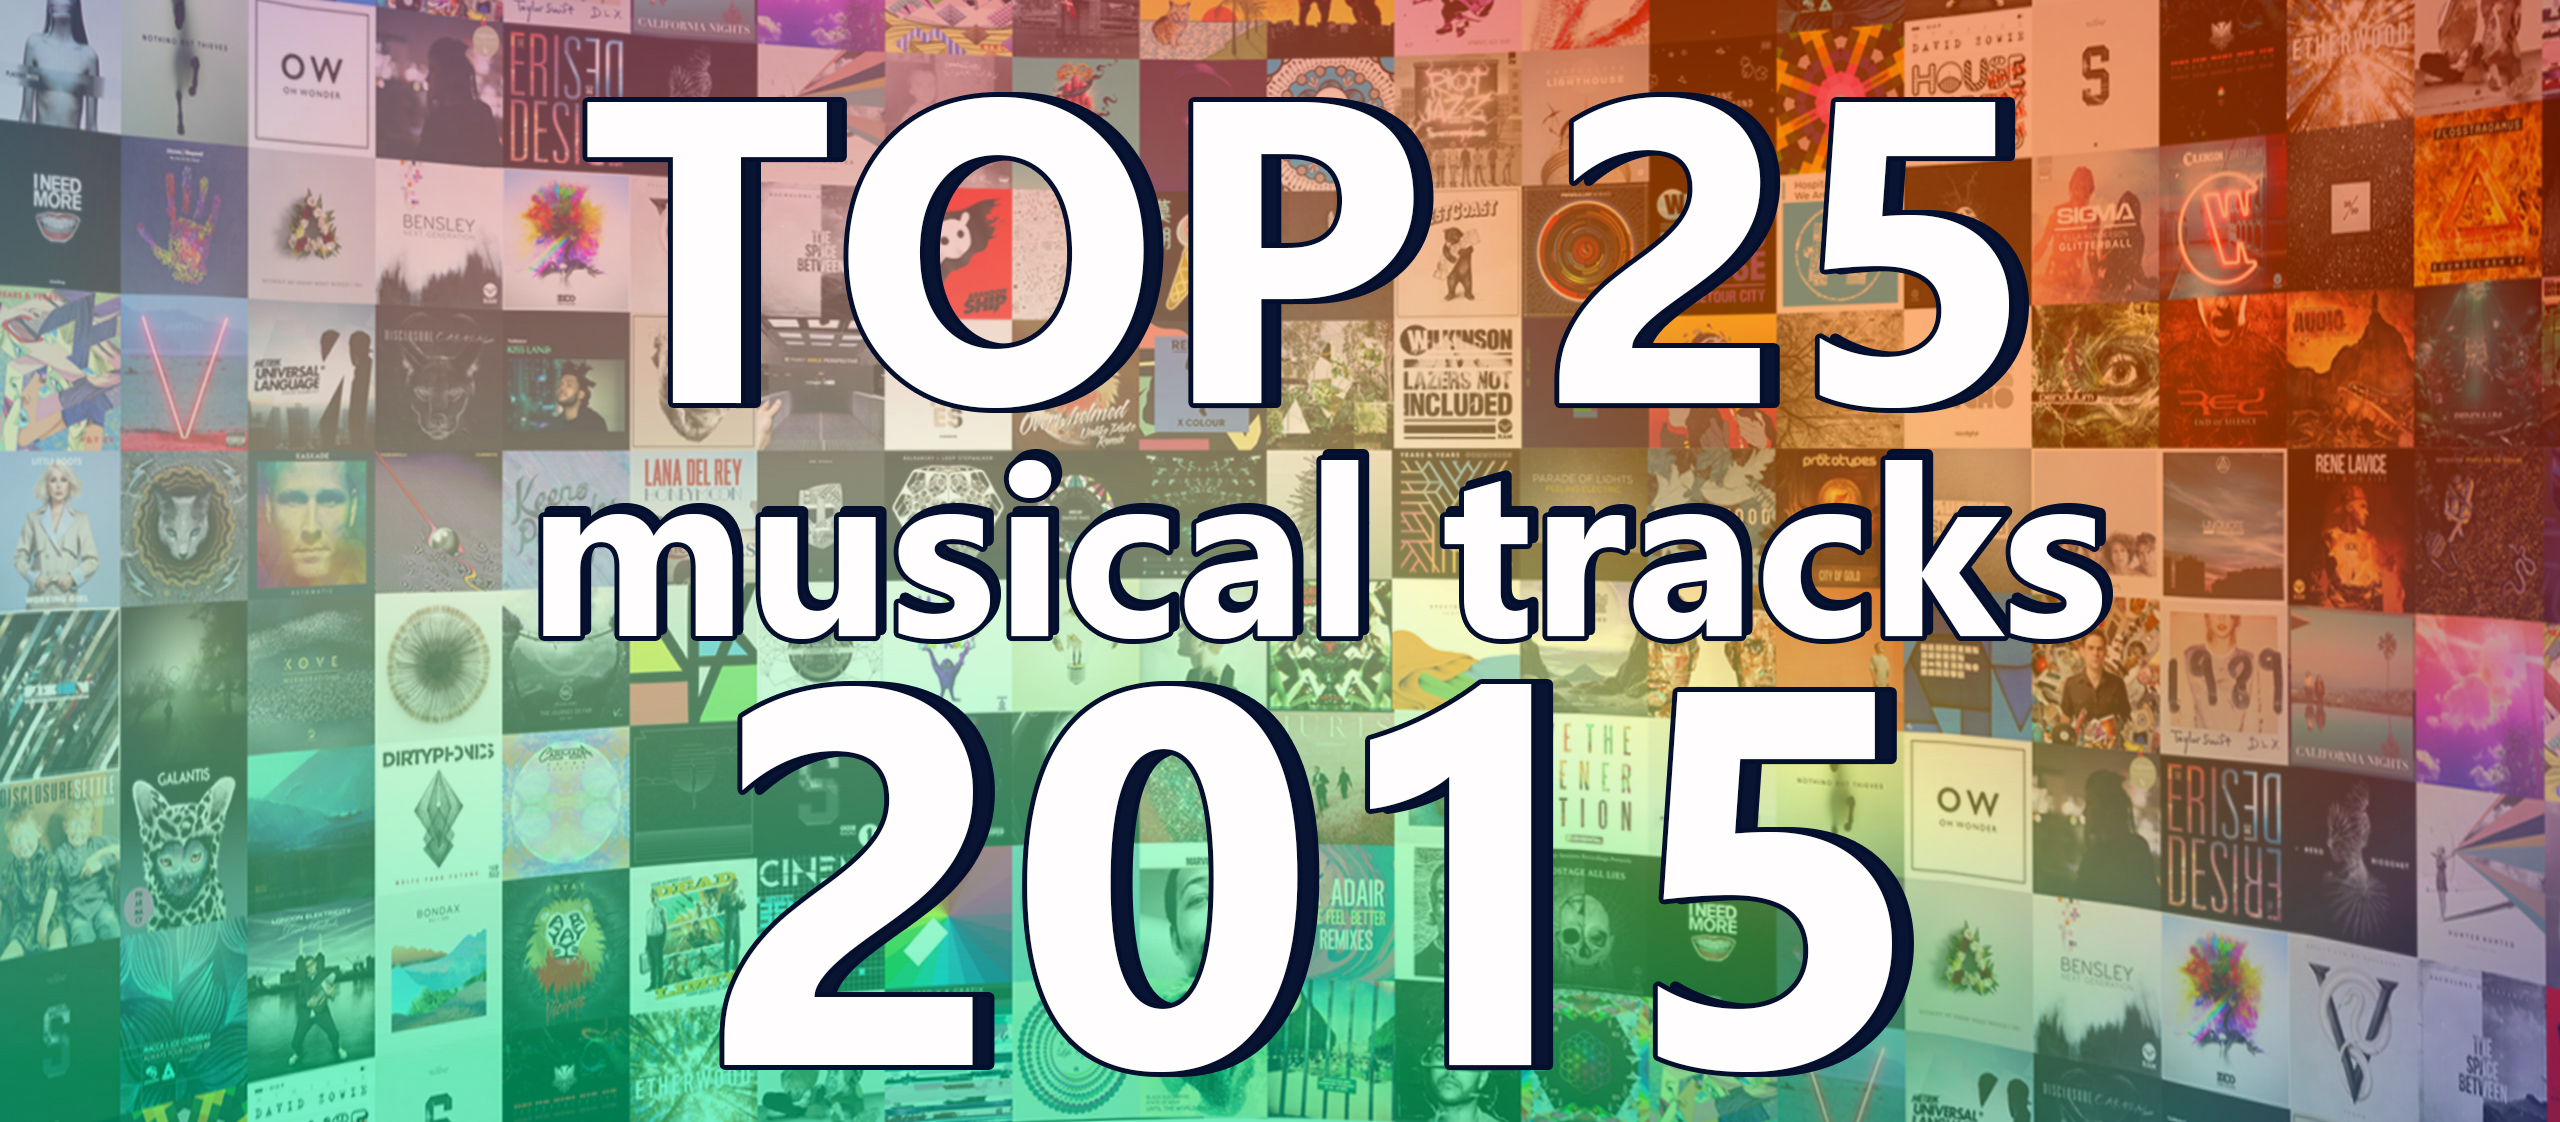 ТОП 25 Музыкальных треков 2015 по версии Splase / TOP 25 Musical Tracks of 2015 version by Splase